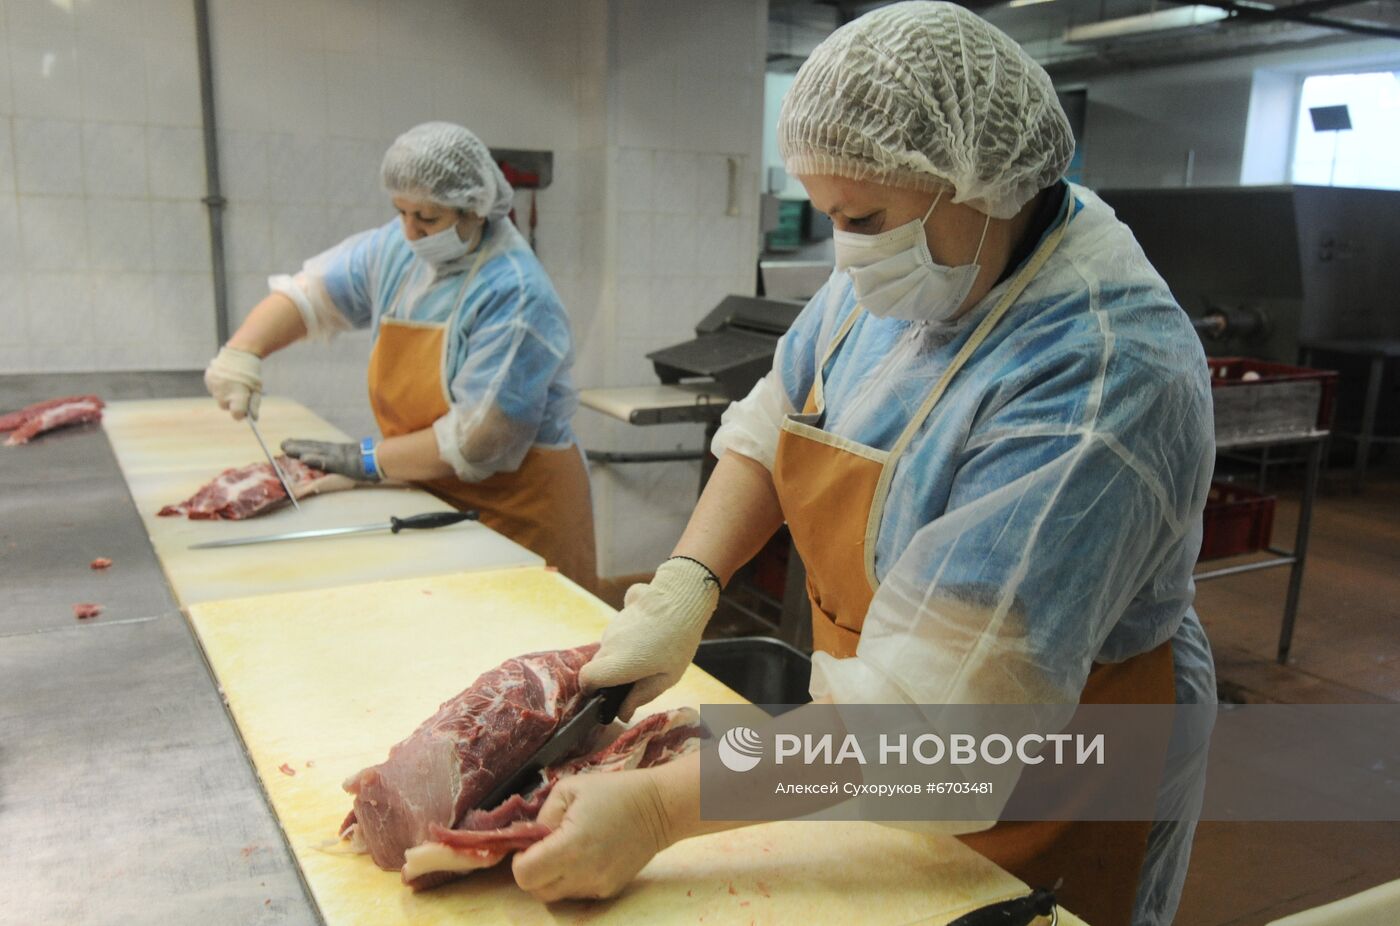 Мясоперерабатывающее предприятие "Жупиков" в Тамбове